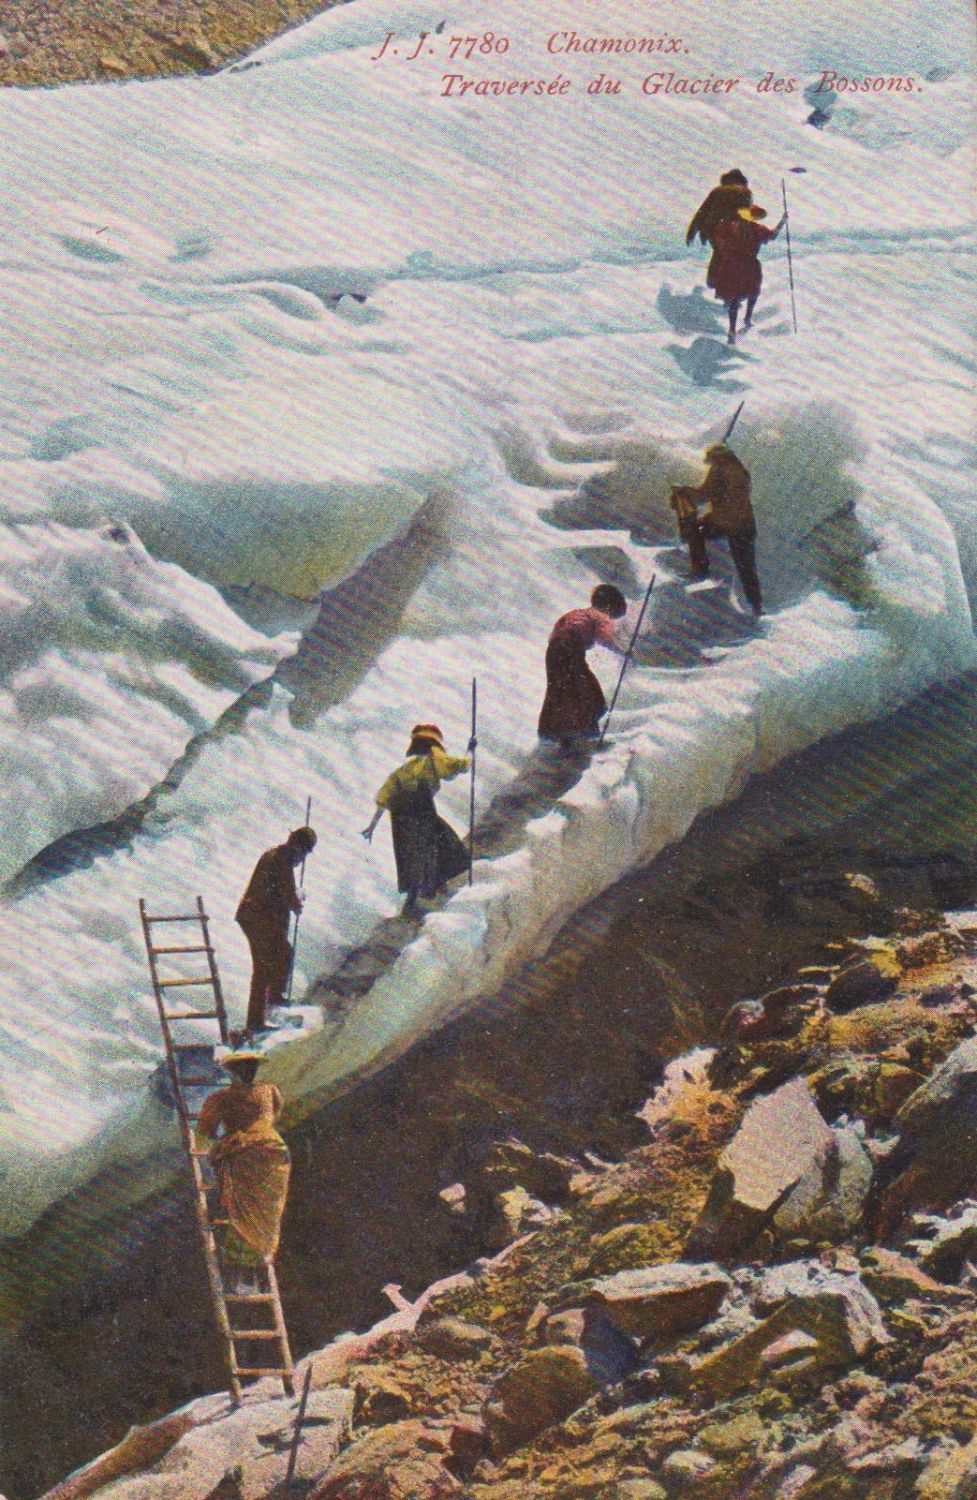 Gletsjer beklimming Chamonix